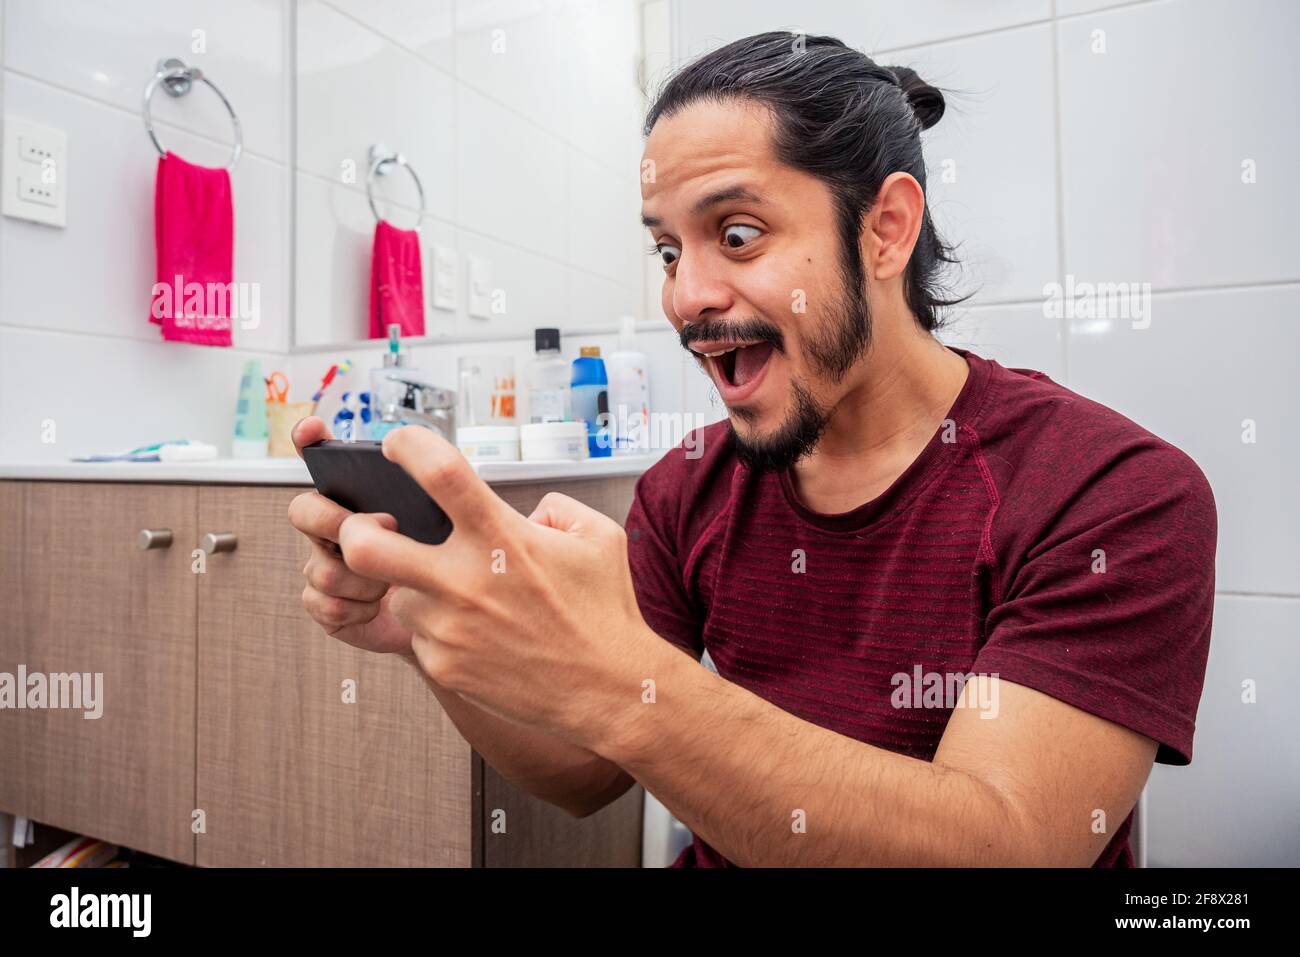 Ein junger lateinischer Mann lächelte auf der Toilette und benutzte ein  Smartphone im Badezimmer Stockfotografie - Alamy